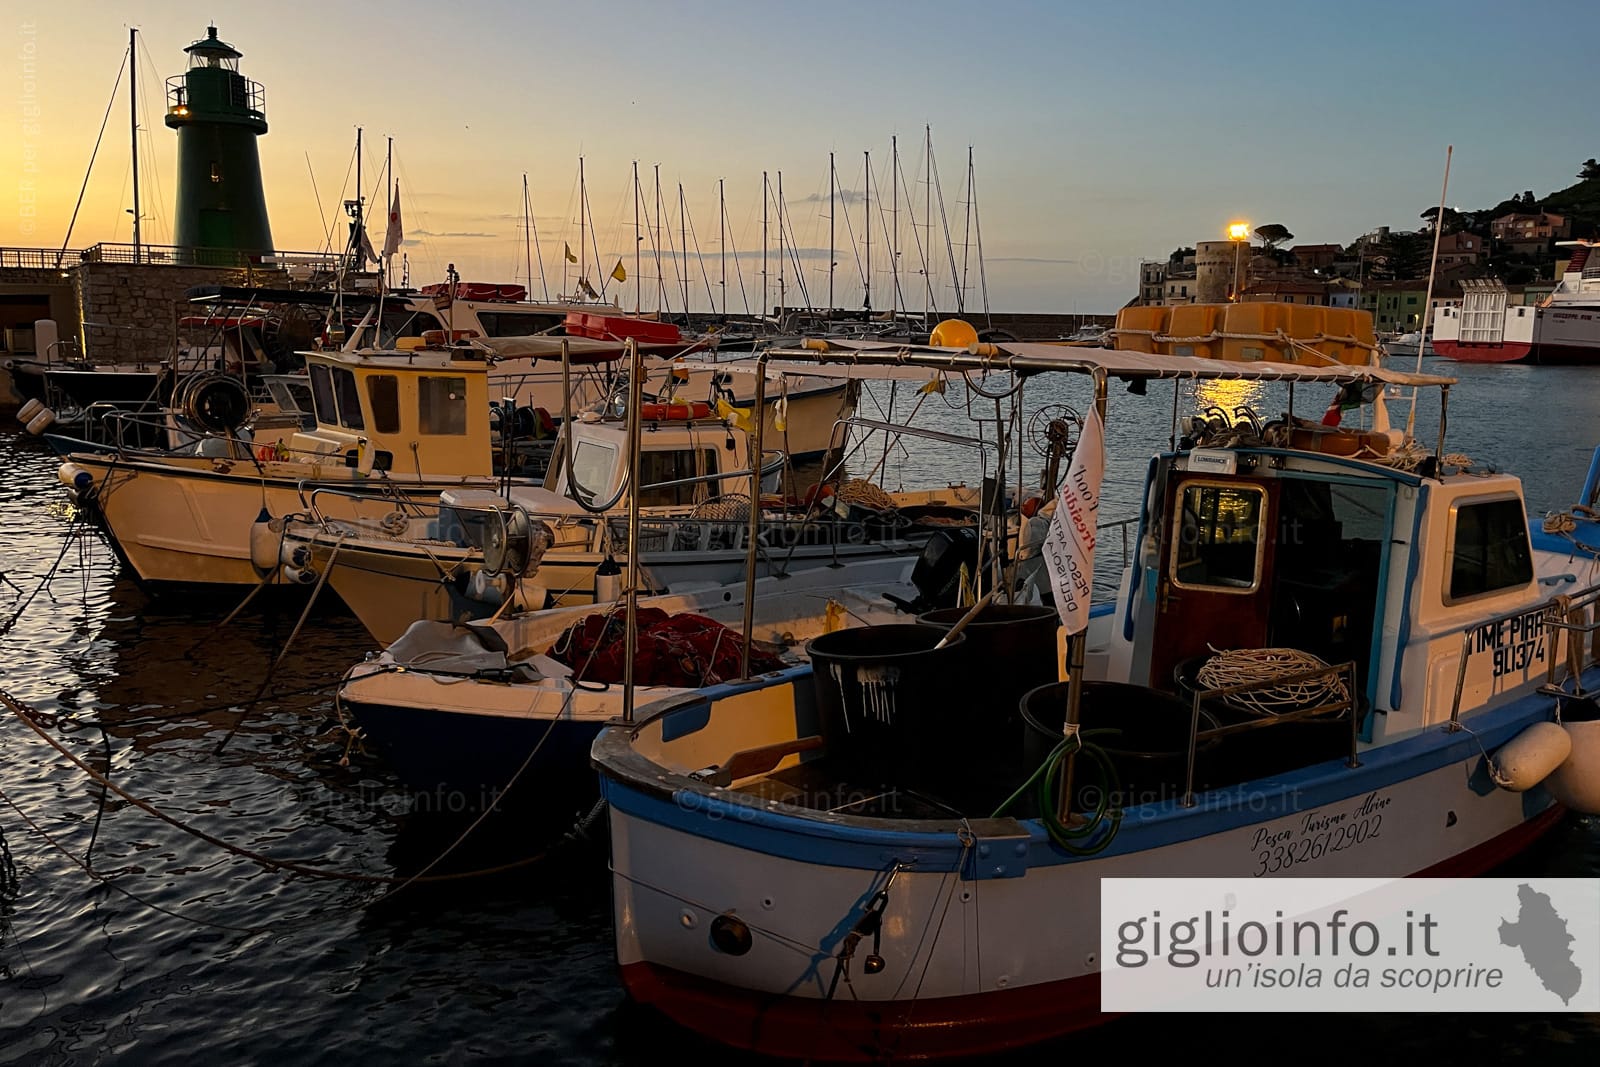 Barche dei pescatori nel porto all'alba, Giglio Porto, Isola del Giglio